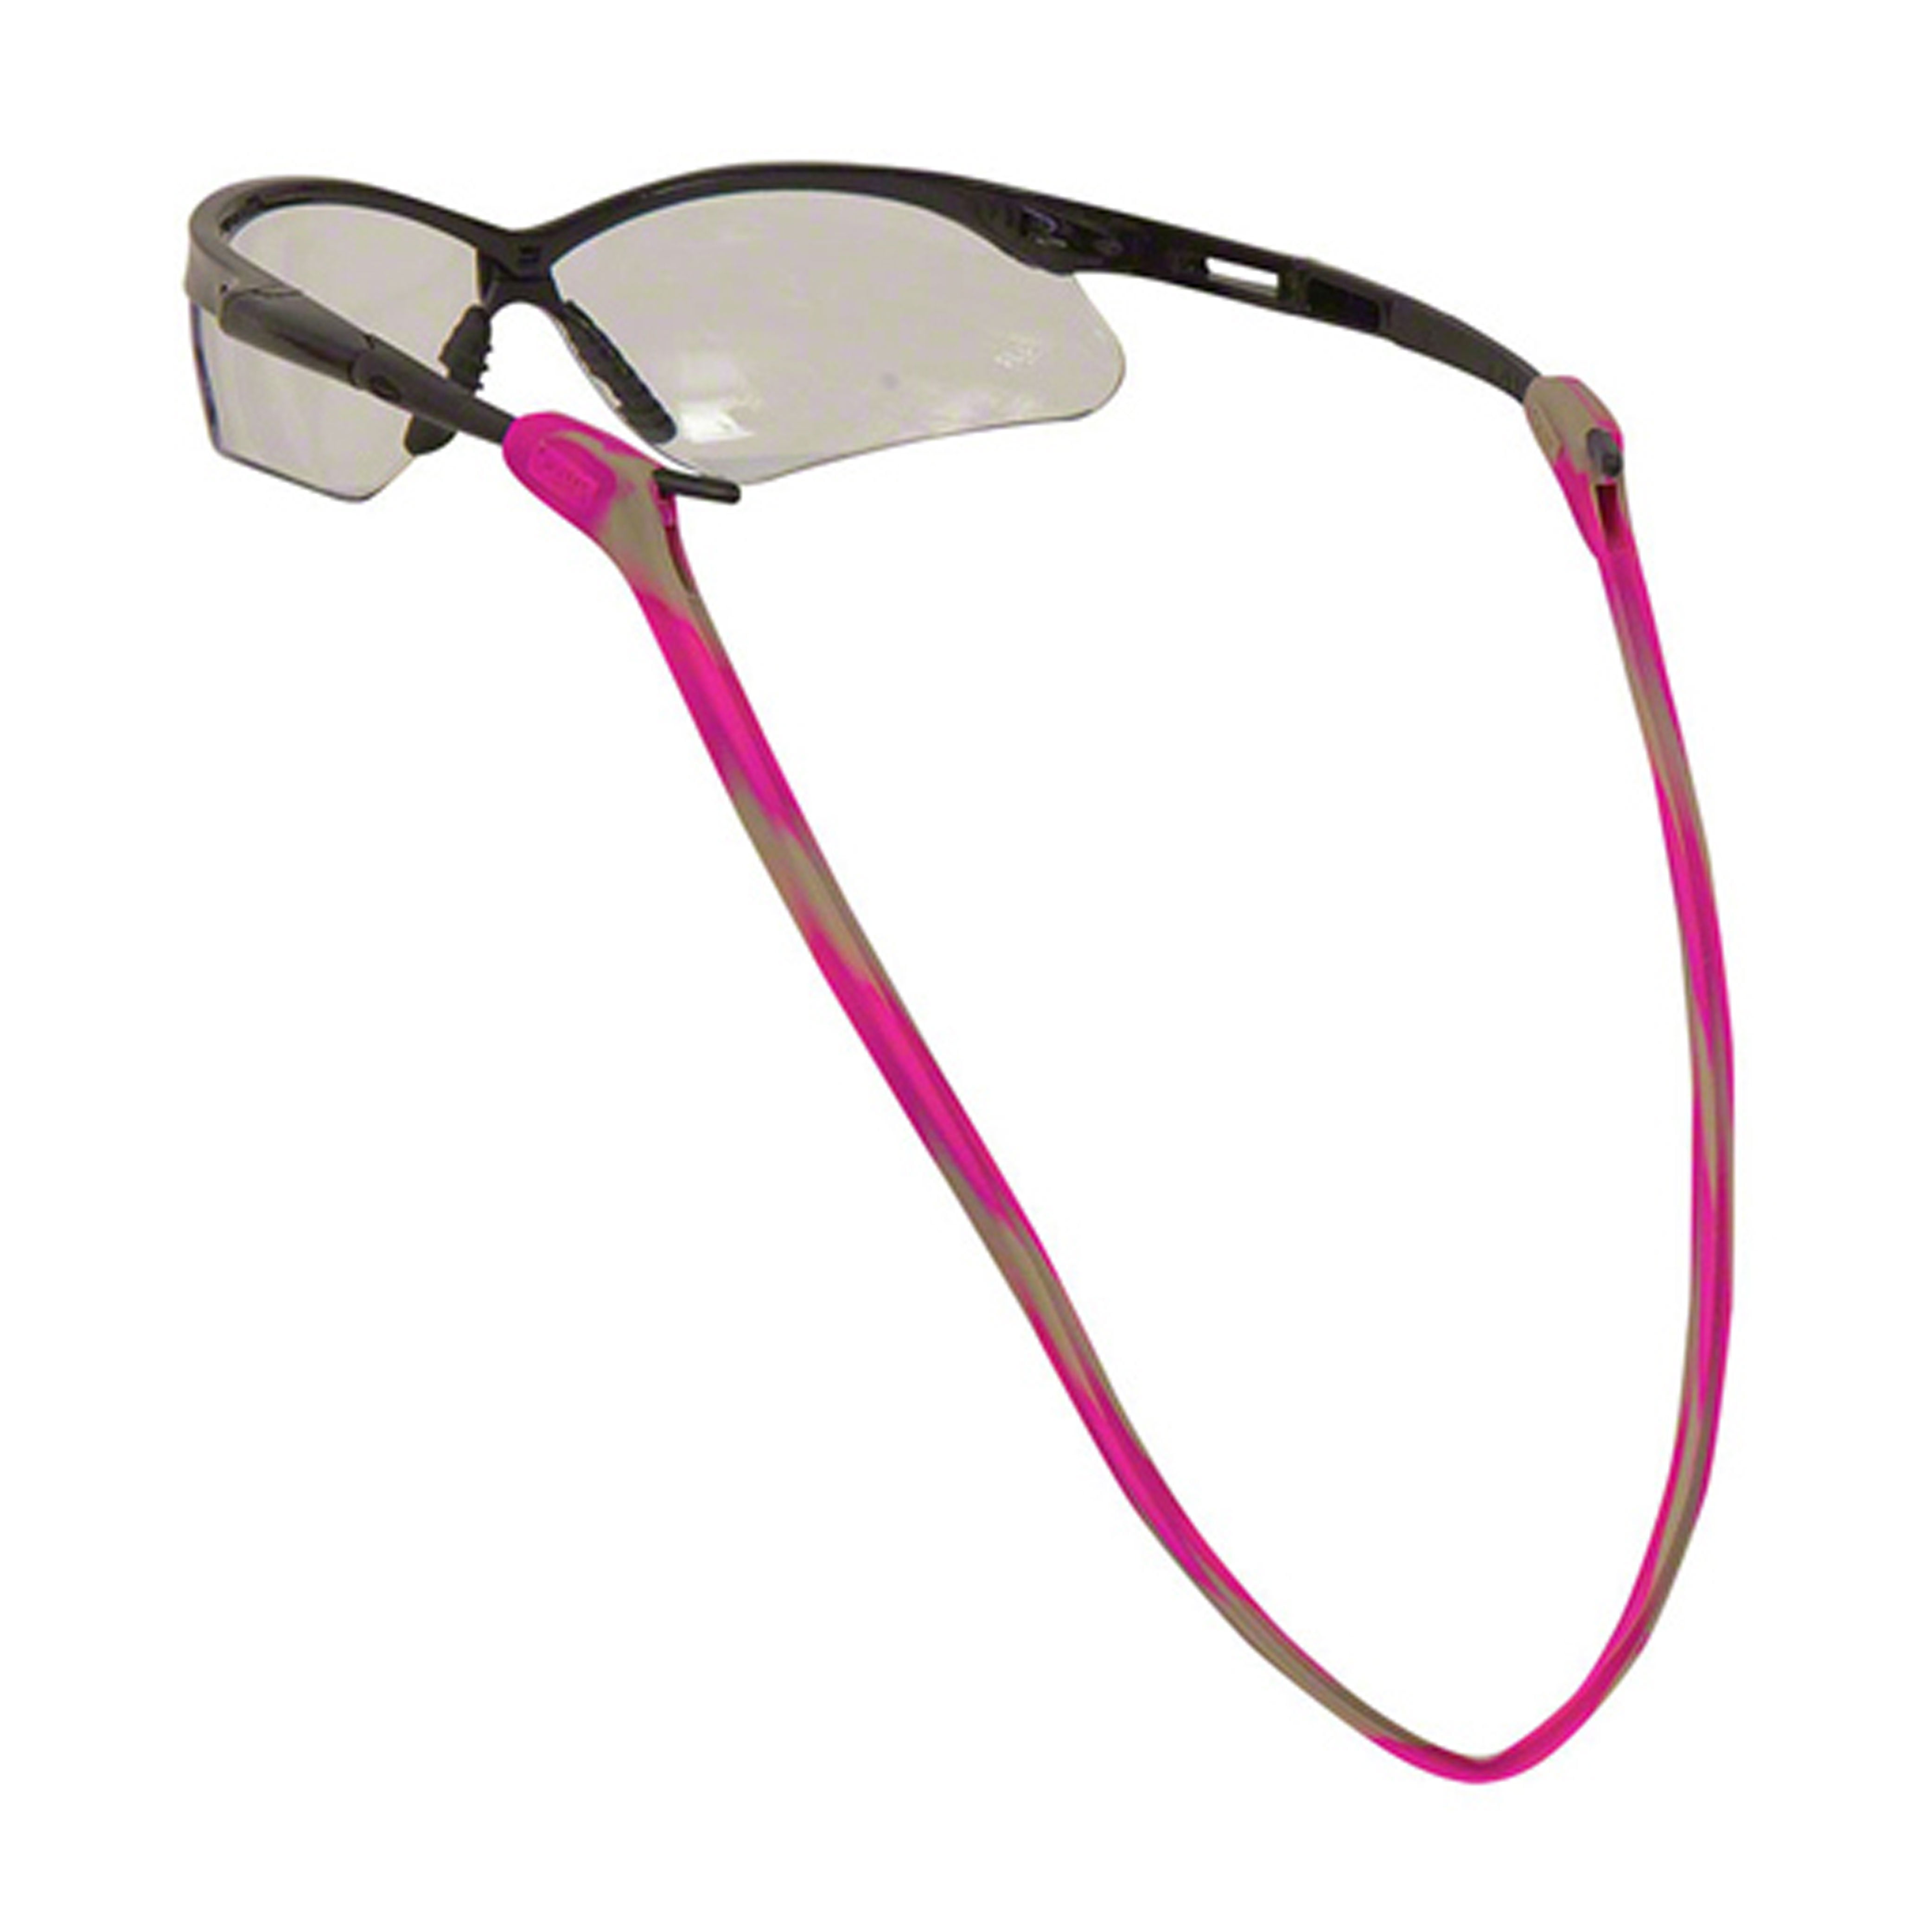  JM 2 Pack Elastic Silicone Eyeglasses Strap Holder